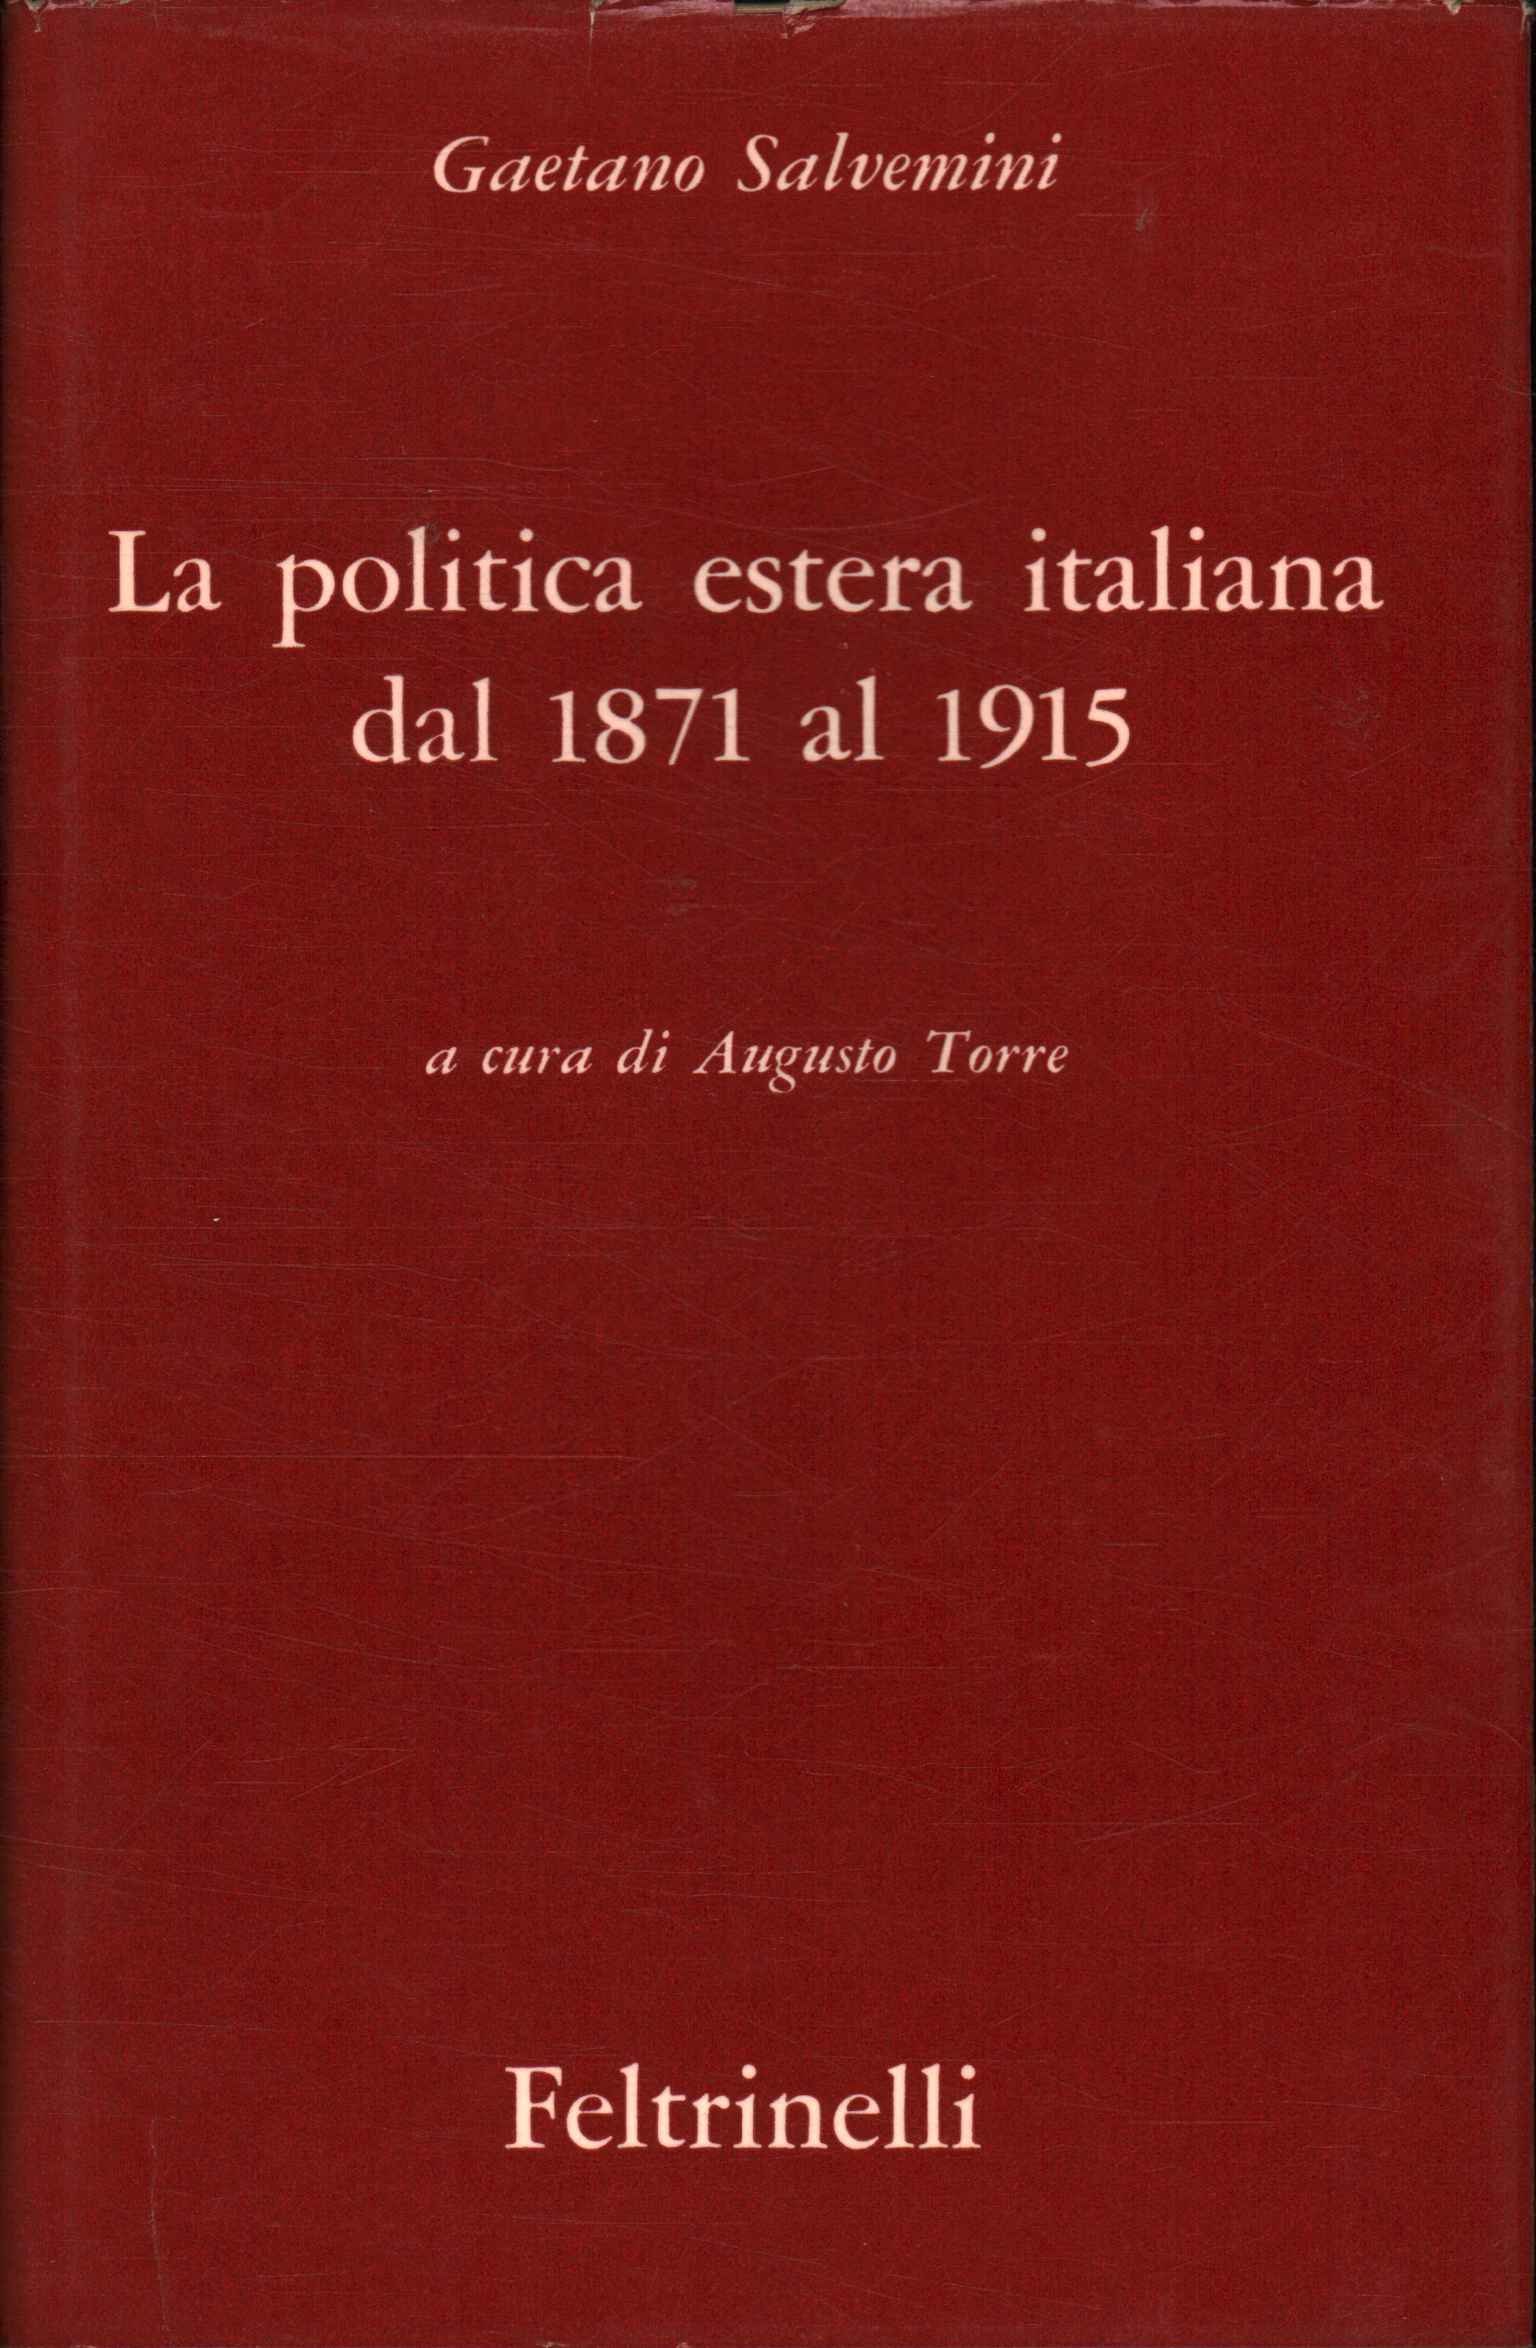 La politica estera italiana dal 1871 a